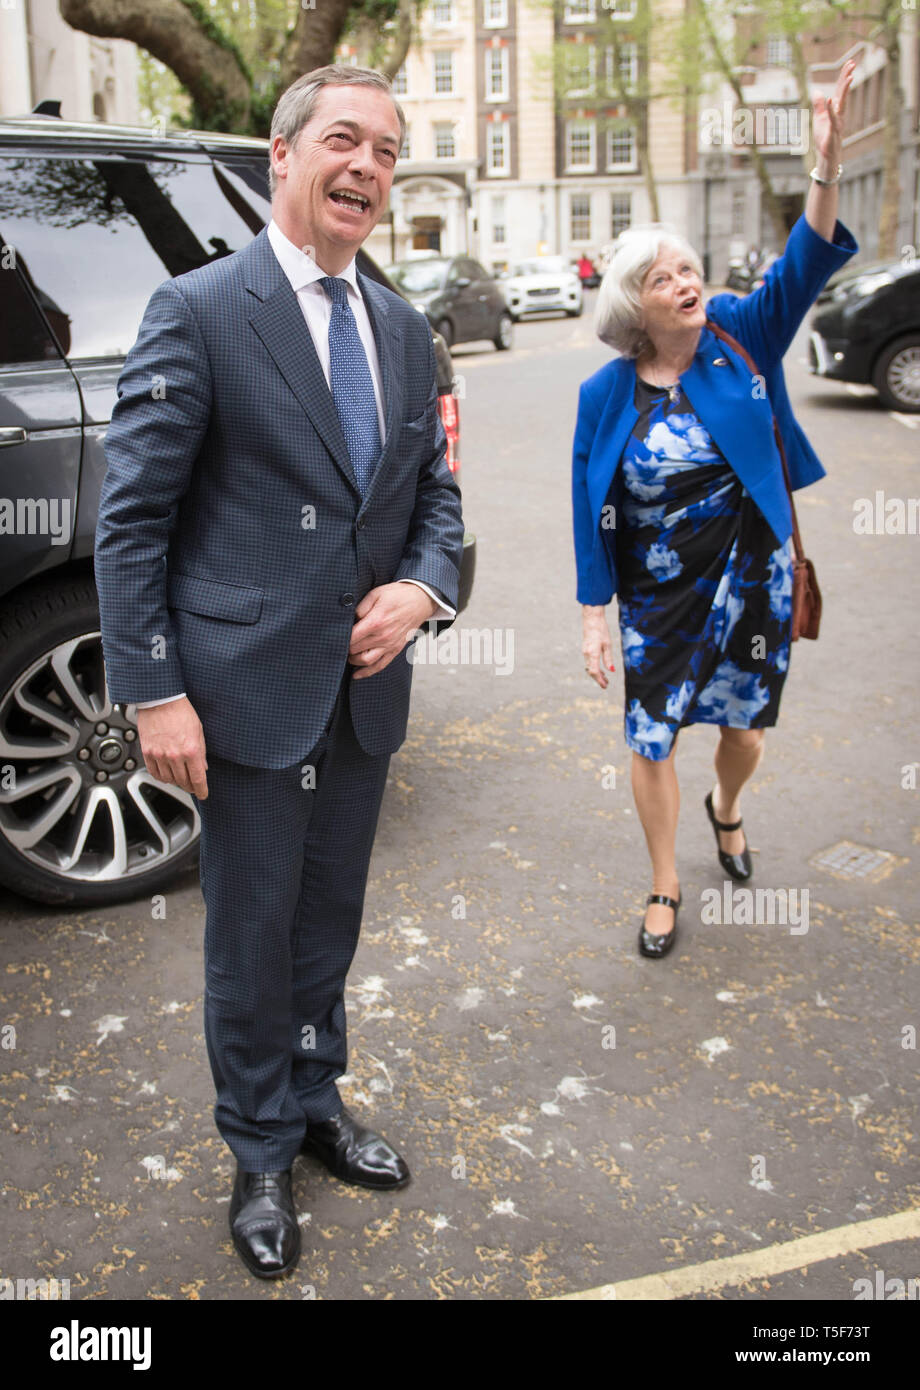 Führer der Partei Brexit Nigel Farage mit ehemaligen Tory minister Ann Widdecombe, die von den Konservativen Bruised die Brexit Partei, in Westminster, London zu verbinden hat. Stockfoto